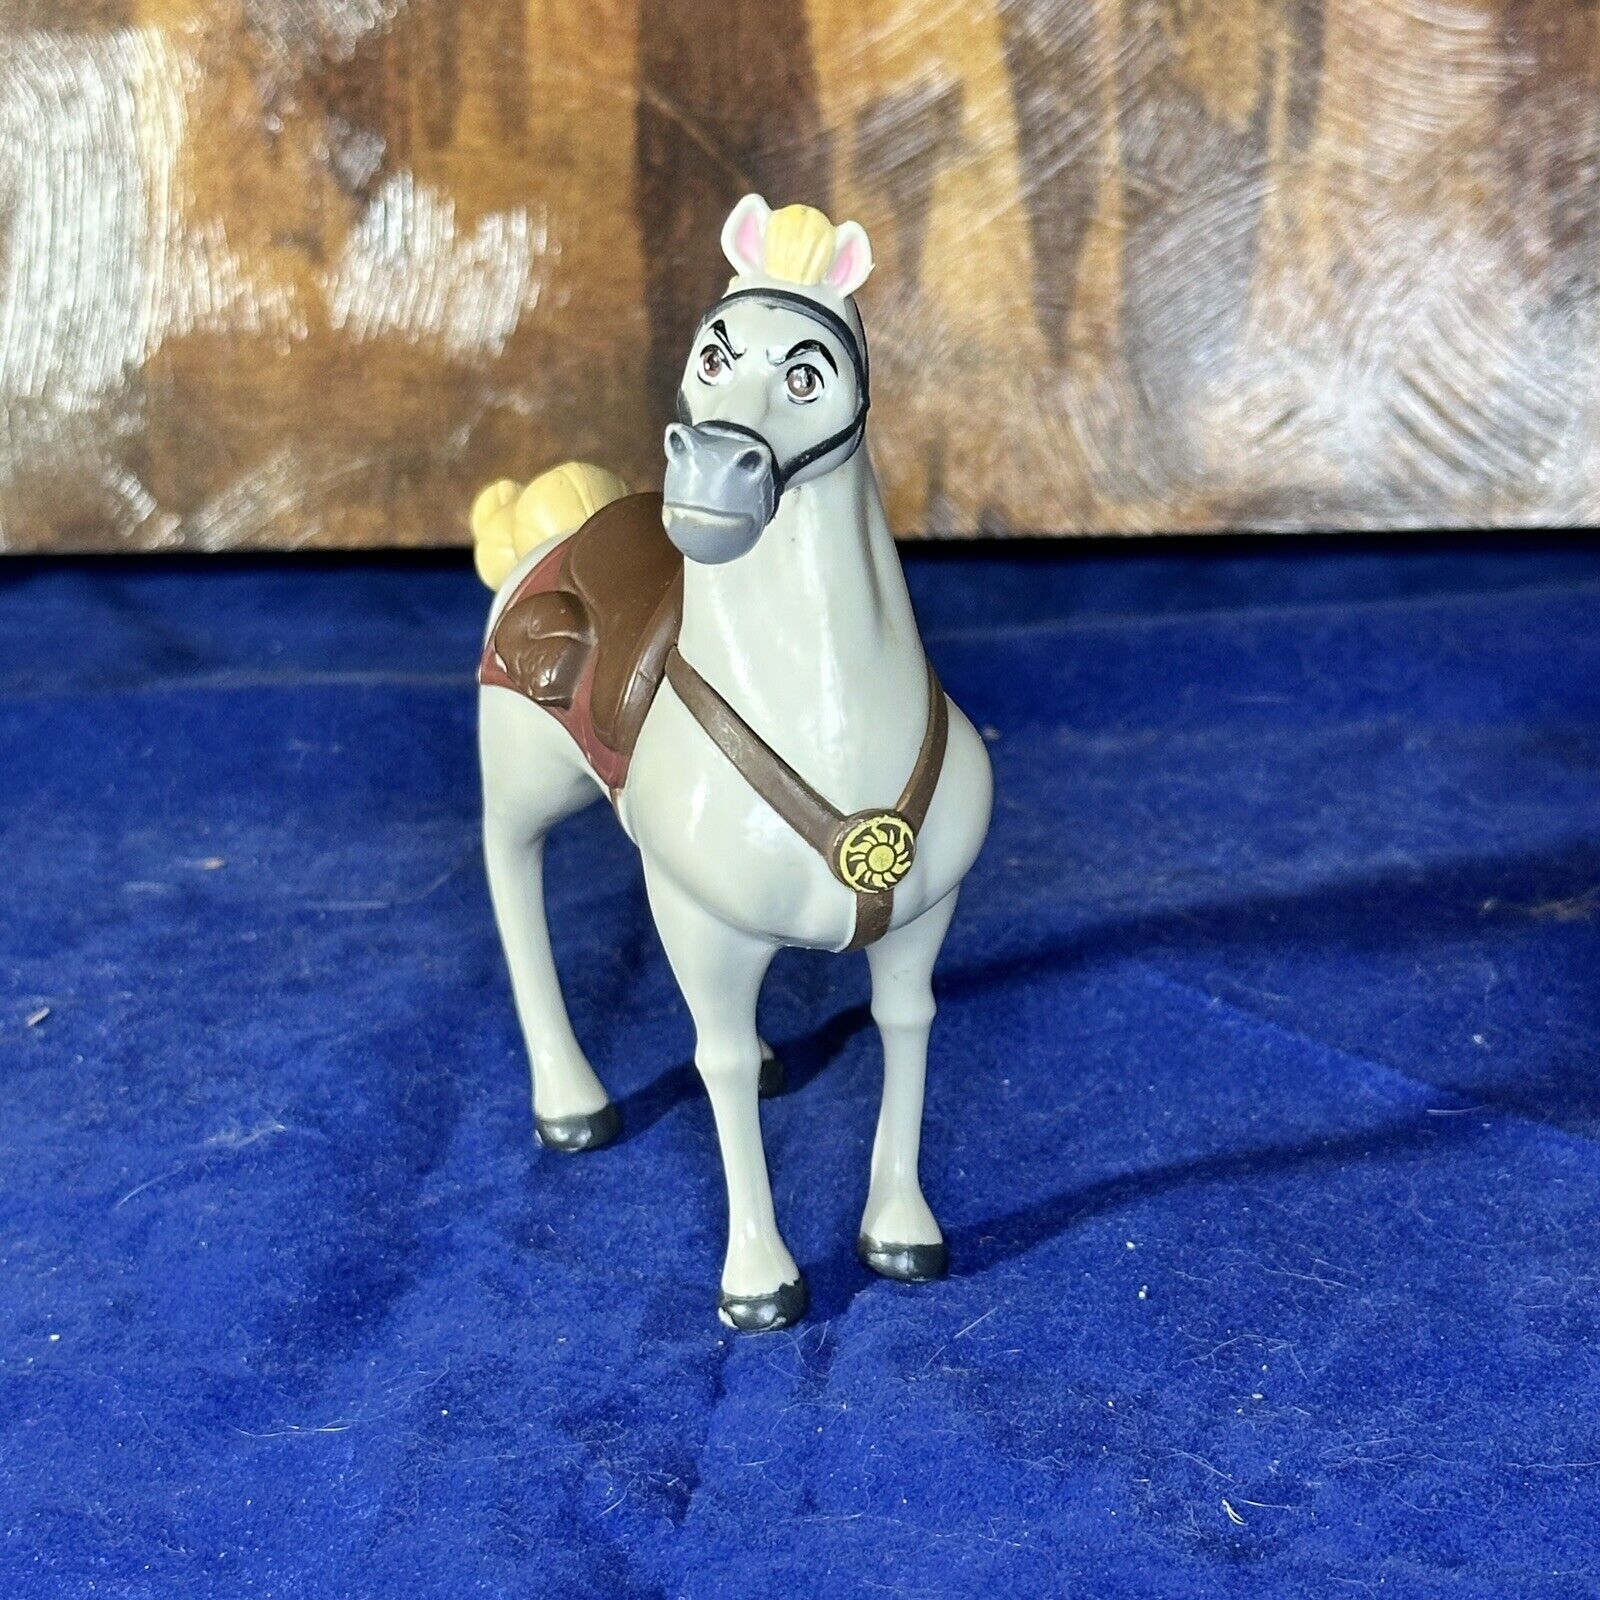 Disney Jakks Horse Large Cake Topper Play Figure Hard Plastic Non-posable